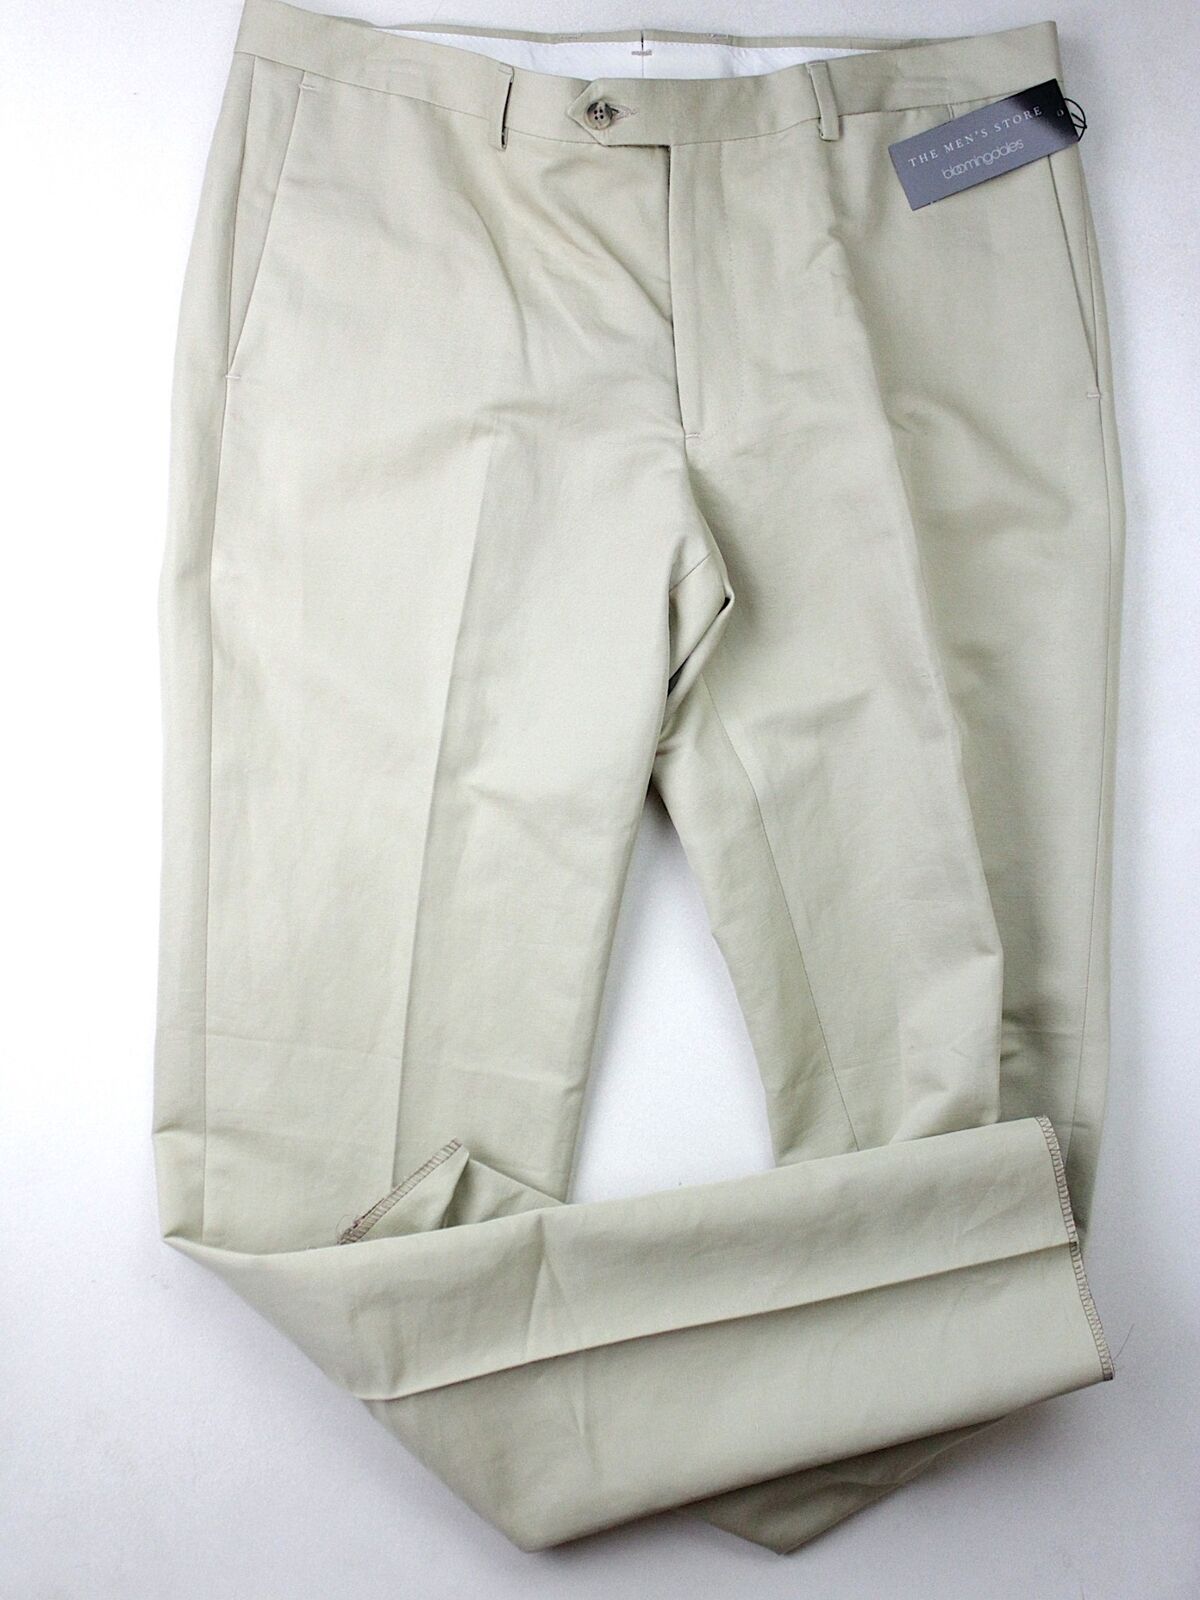 The Men's Store Bloomingdales Cotton & Linen Slim Fit Tan Size 34 Dress Pants